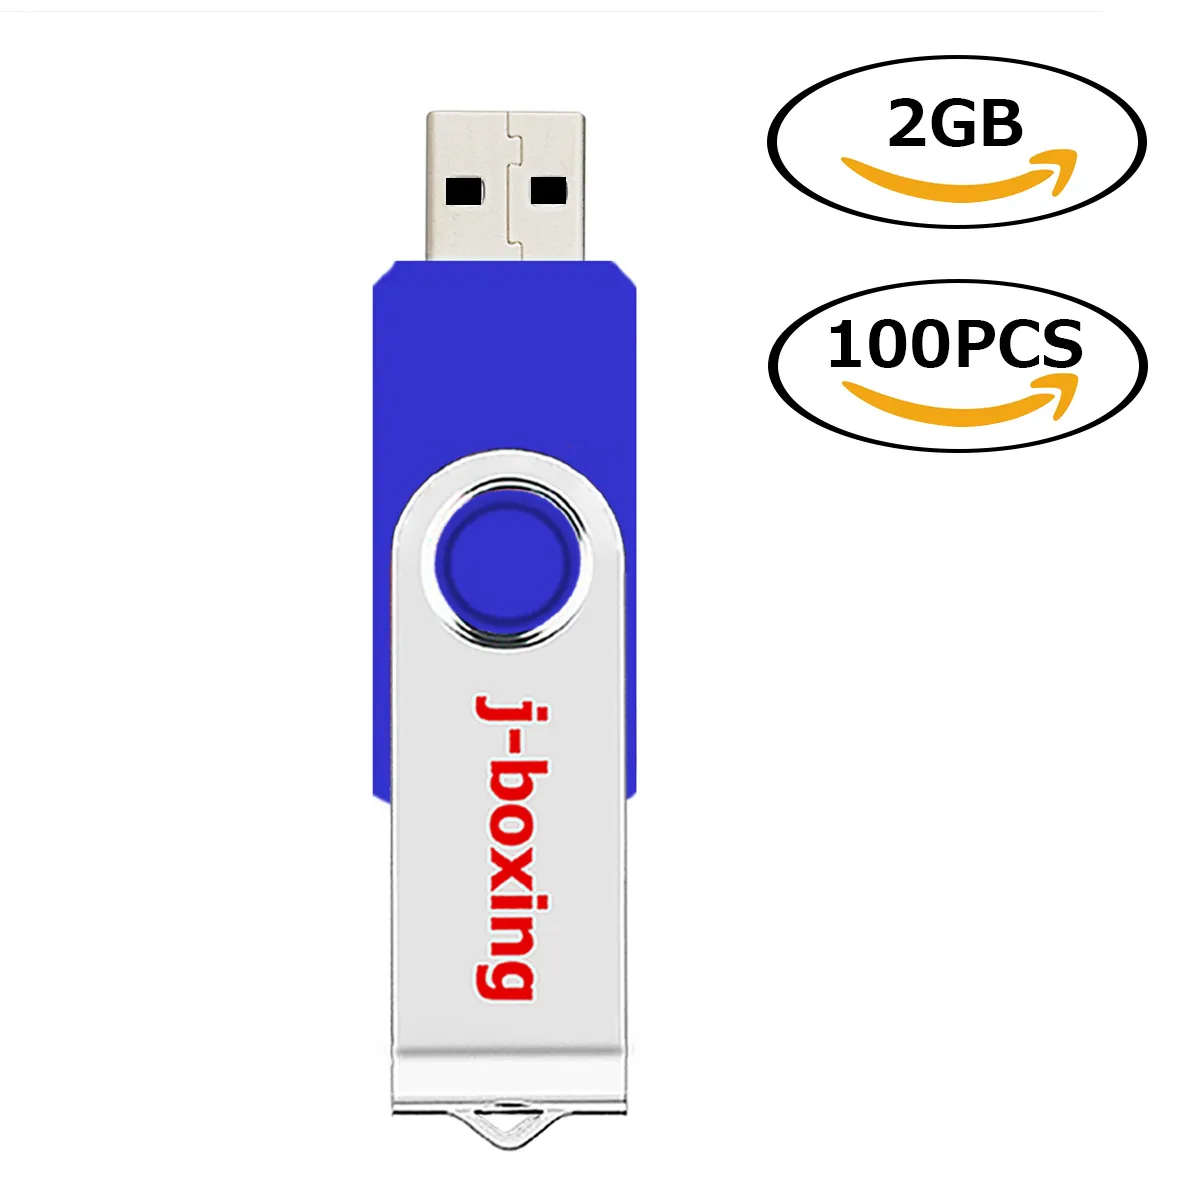 도매 100pcs 2GB USB 플래시 드라이브 메탈 스위블 플래시 메모리 PC 용 플래시 메모리 스틱 PC 노트북 태블릿 펜 드라이브 썸 스토리지 10 색 무료 배송